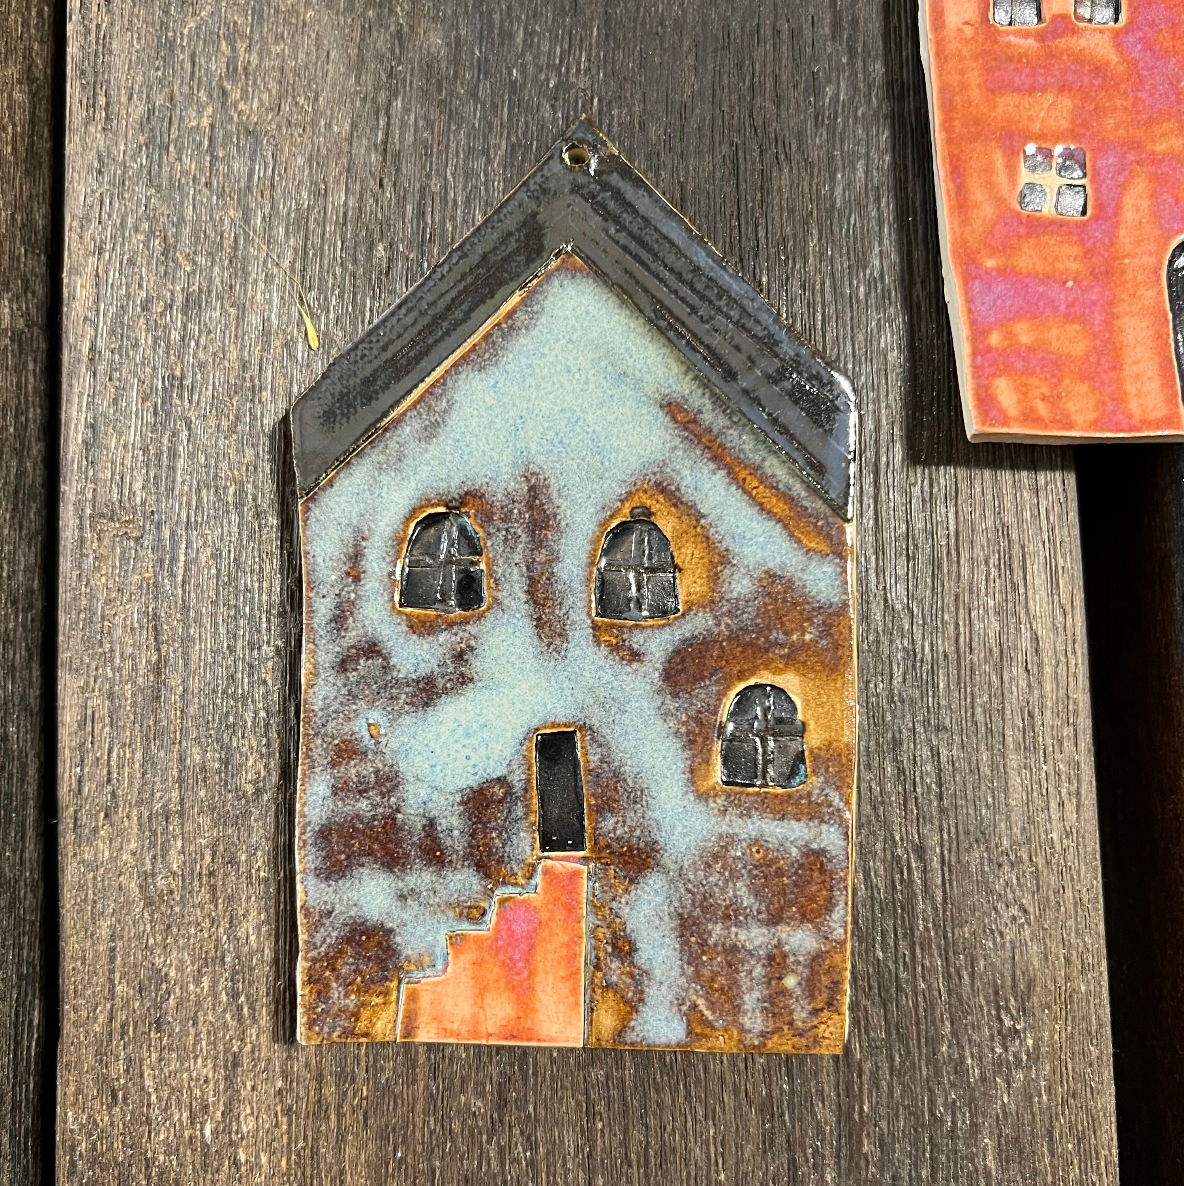 Hus / Vægophæng / Keramik